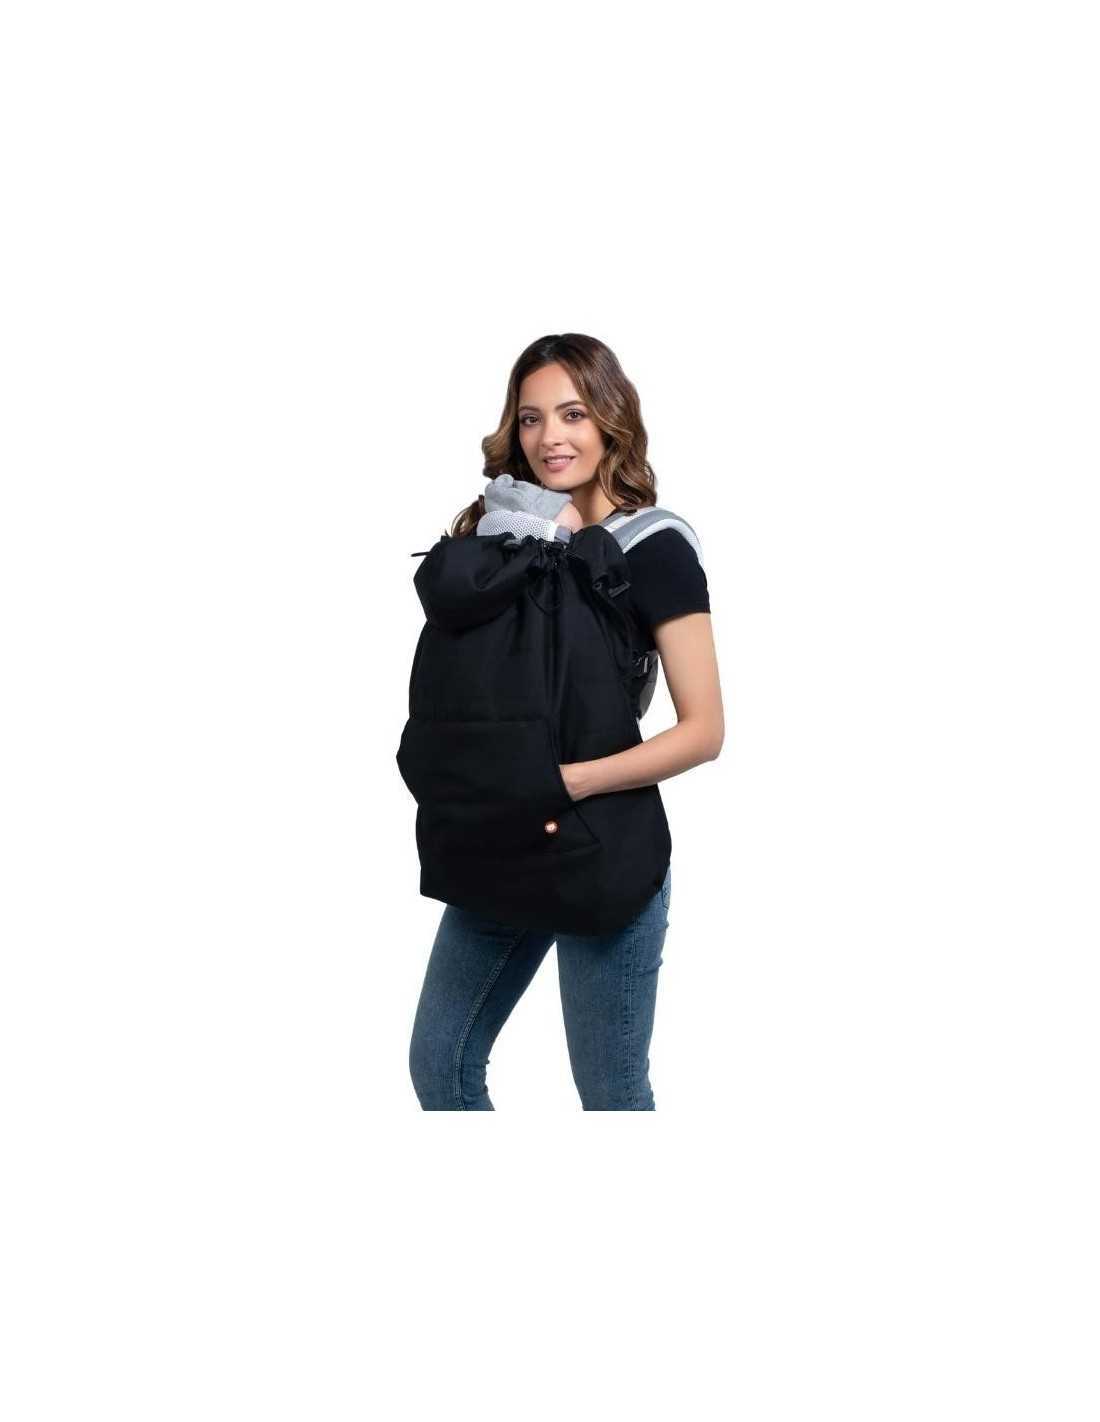 Comprar Cobertor Porteo Invierno Wombat para bebés y recién nacidos